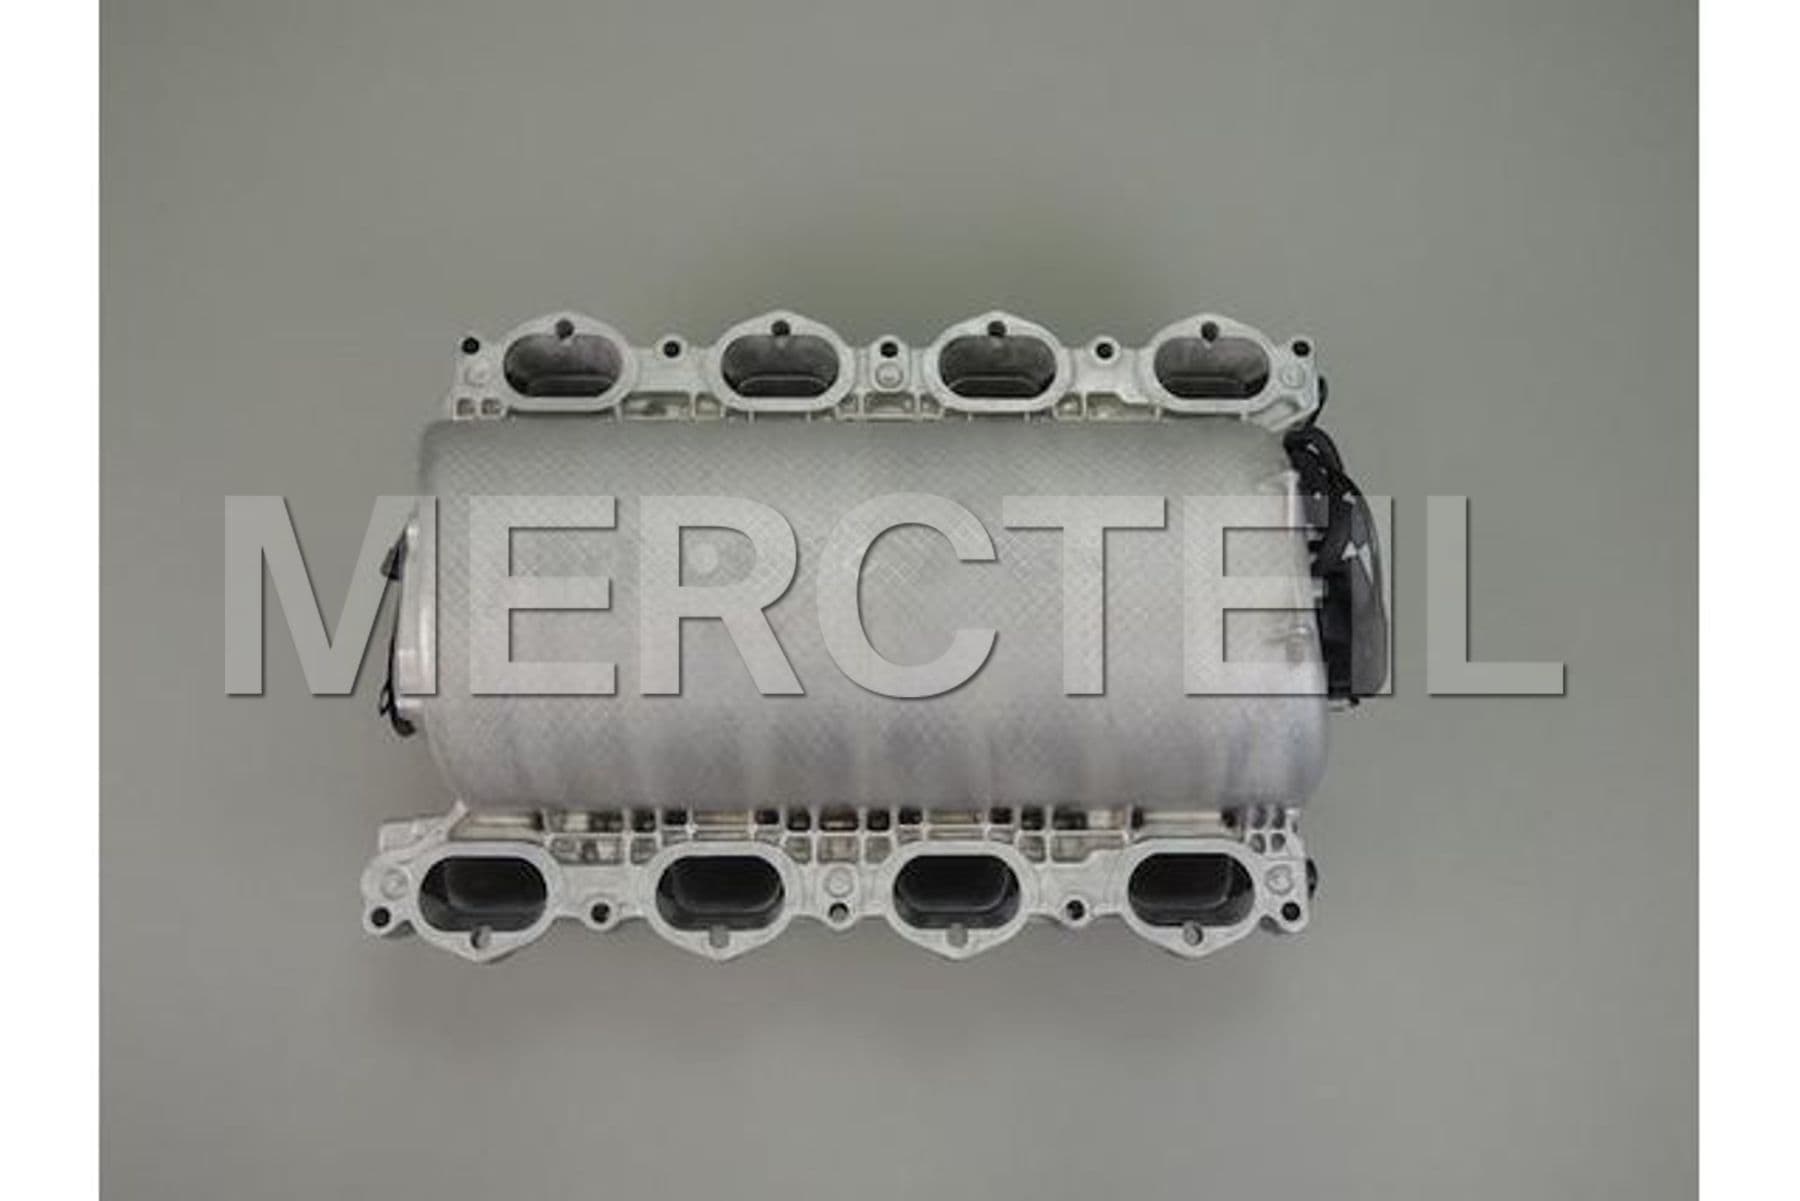 https://mercteil.com/s3/a-2731400701-mercedes-benz-intake-manifold-1629245836560-x2.jpg